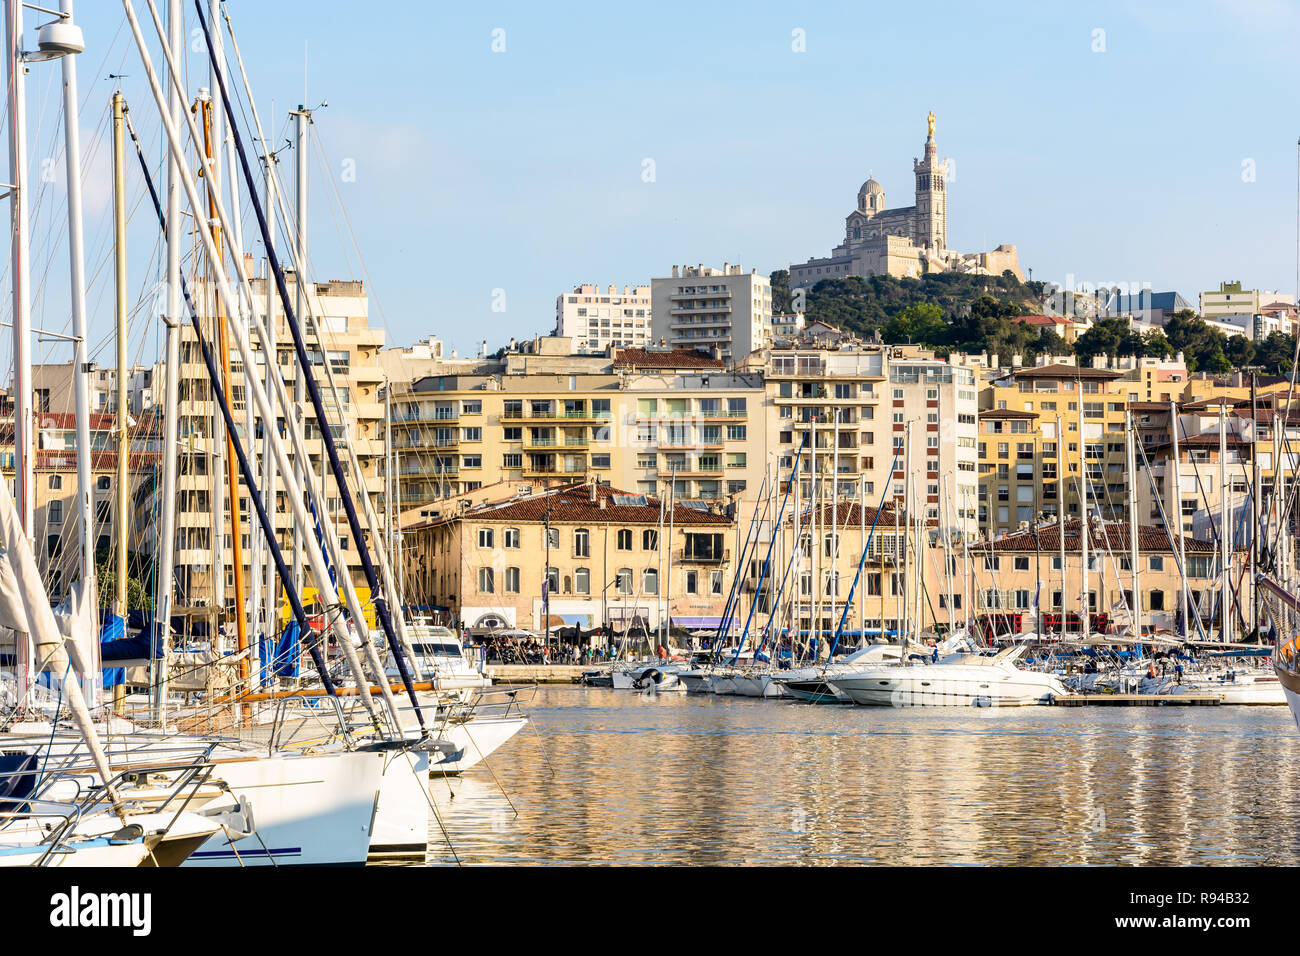 Le Vieux Port de Marseille, France, avec les bateaux et voiliers amarrés dans le port de plaisance et la basilique Notre-Dame de la garde en haut de la colline au coucher du soleil Banque D'Images